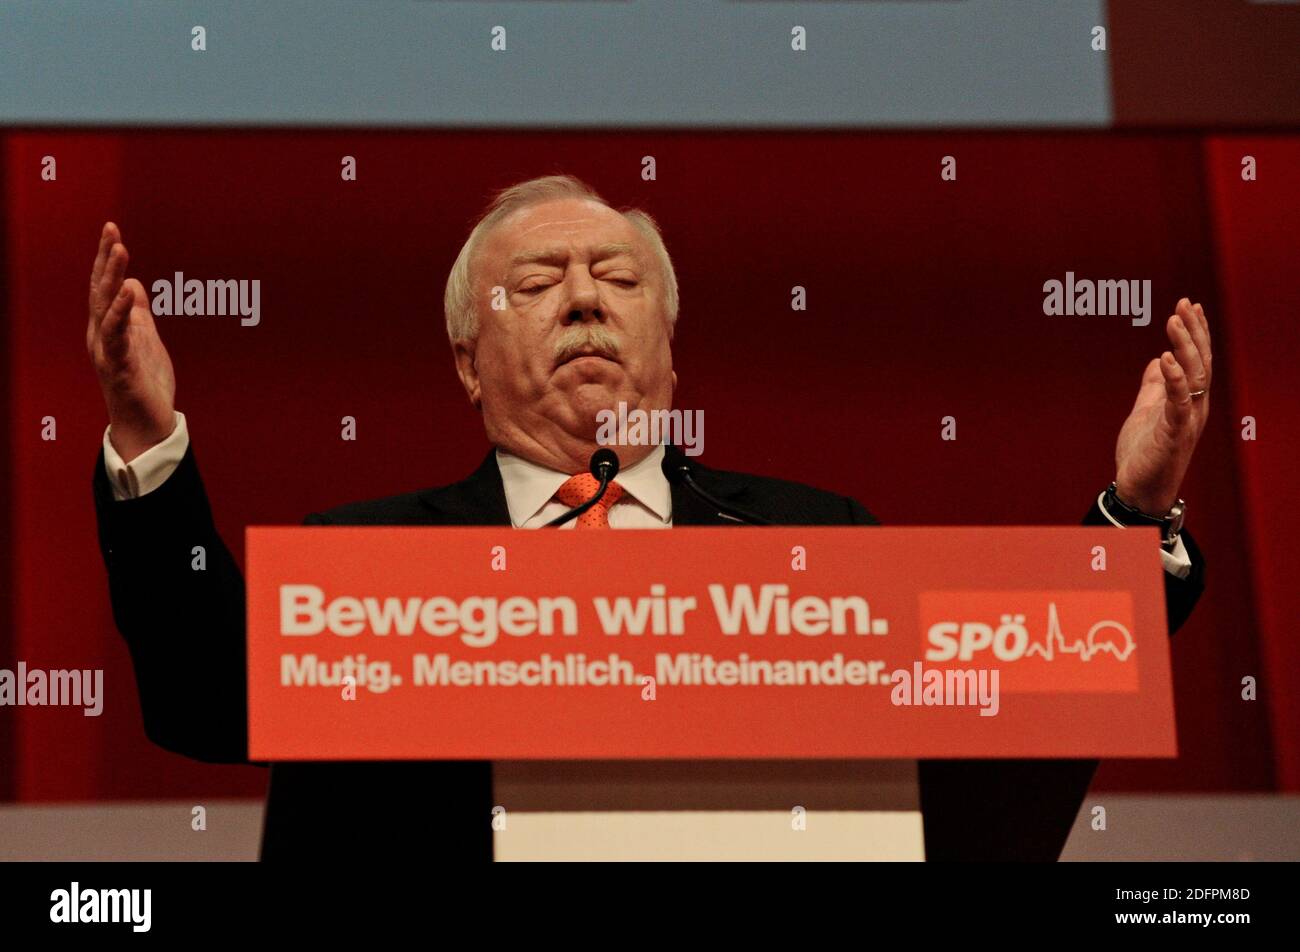 Austria Vienna. 16 aprile 2016. Michael Häupl è un politico austriaco (Partito socialdemocratico austriaco SPÖ) ed è stato sindaco e governatore di Vienna dal 7 novembre 1994 al 24 maggio 2018. Foto Stock